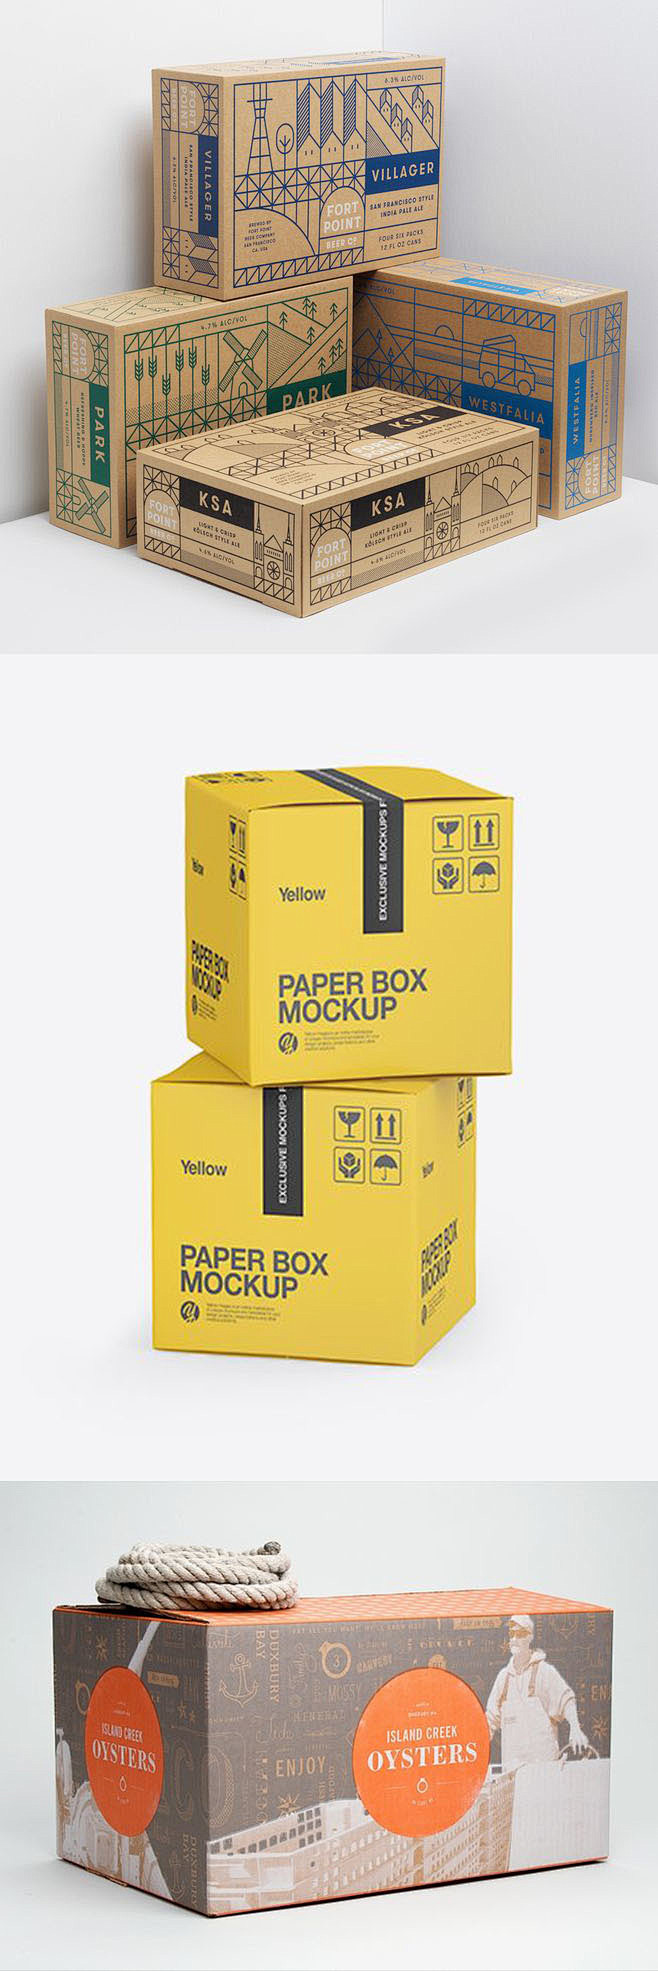 快递箱纸盒设计包装